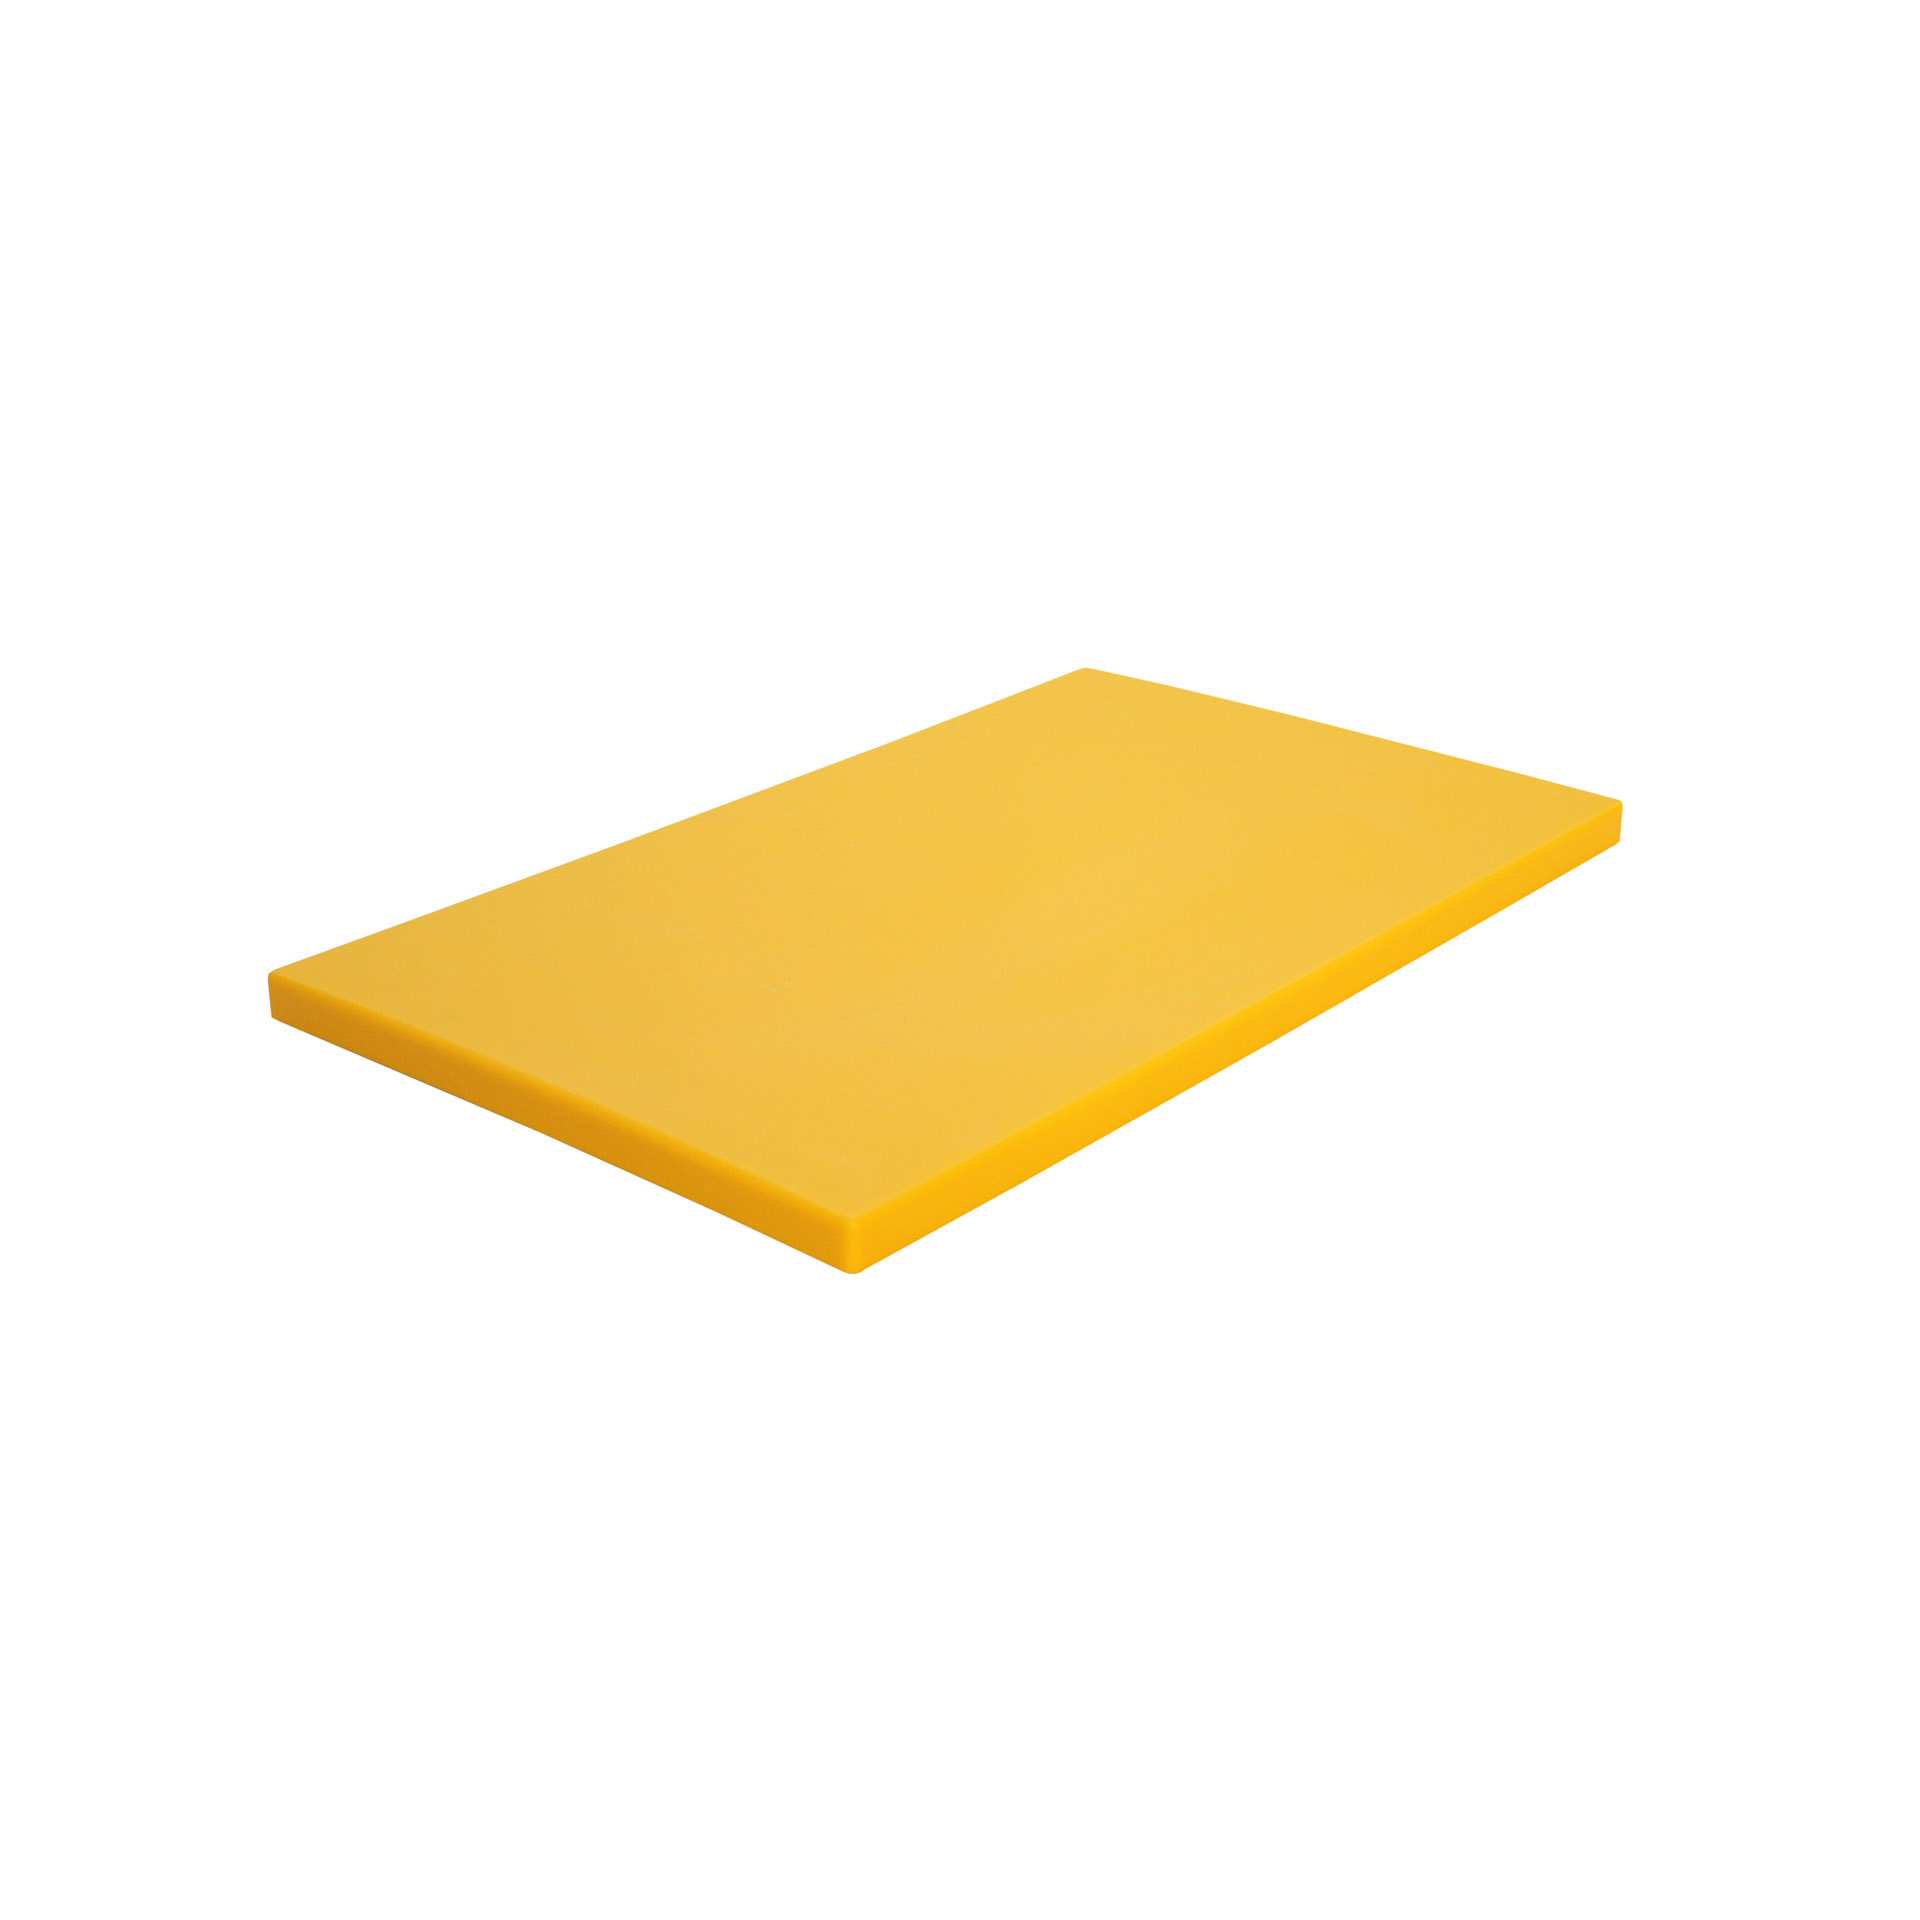 GN-Schneidebrett - mit Füßen - gelb - GN 1/1 (530 x 325 mm) - Polyethylen - 228314-C